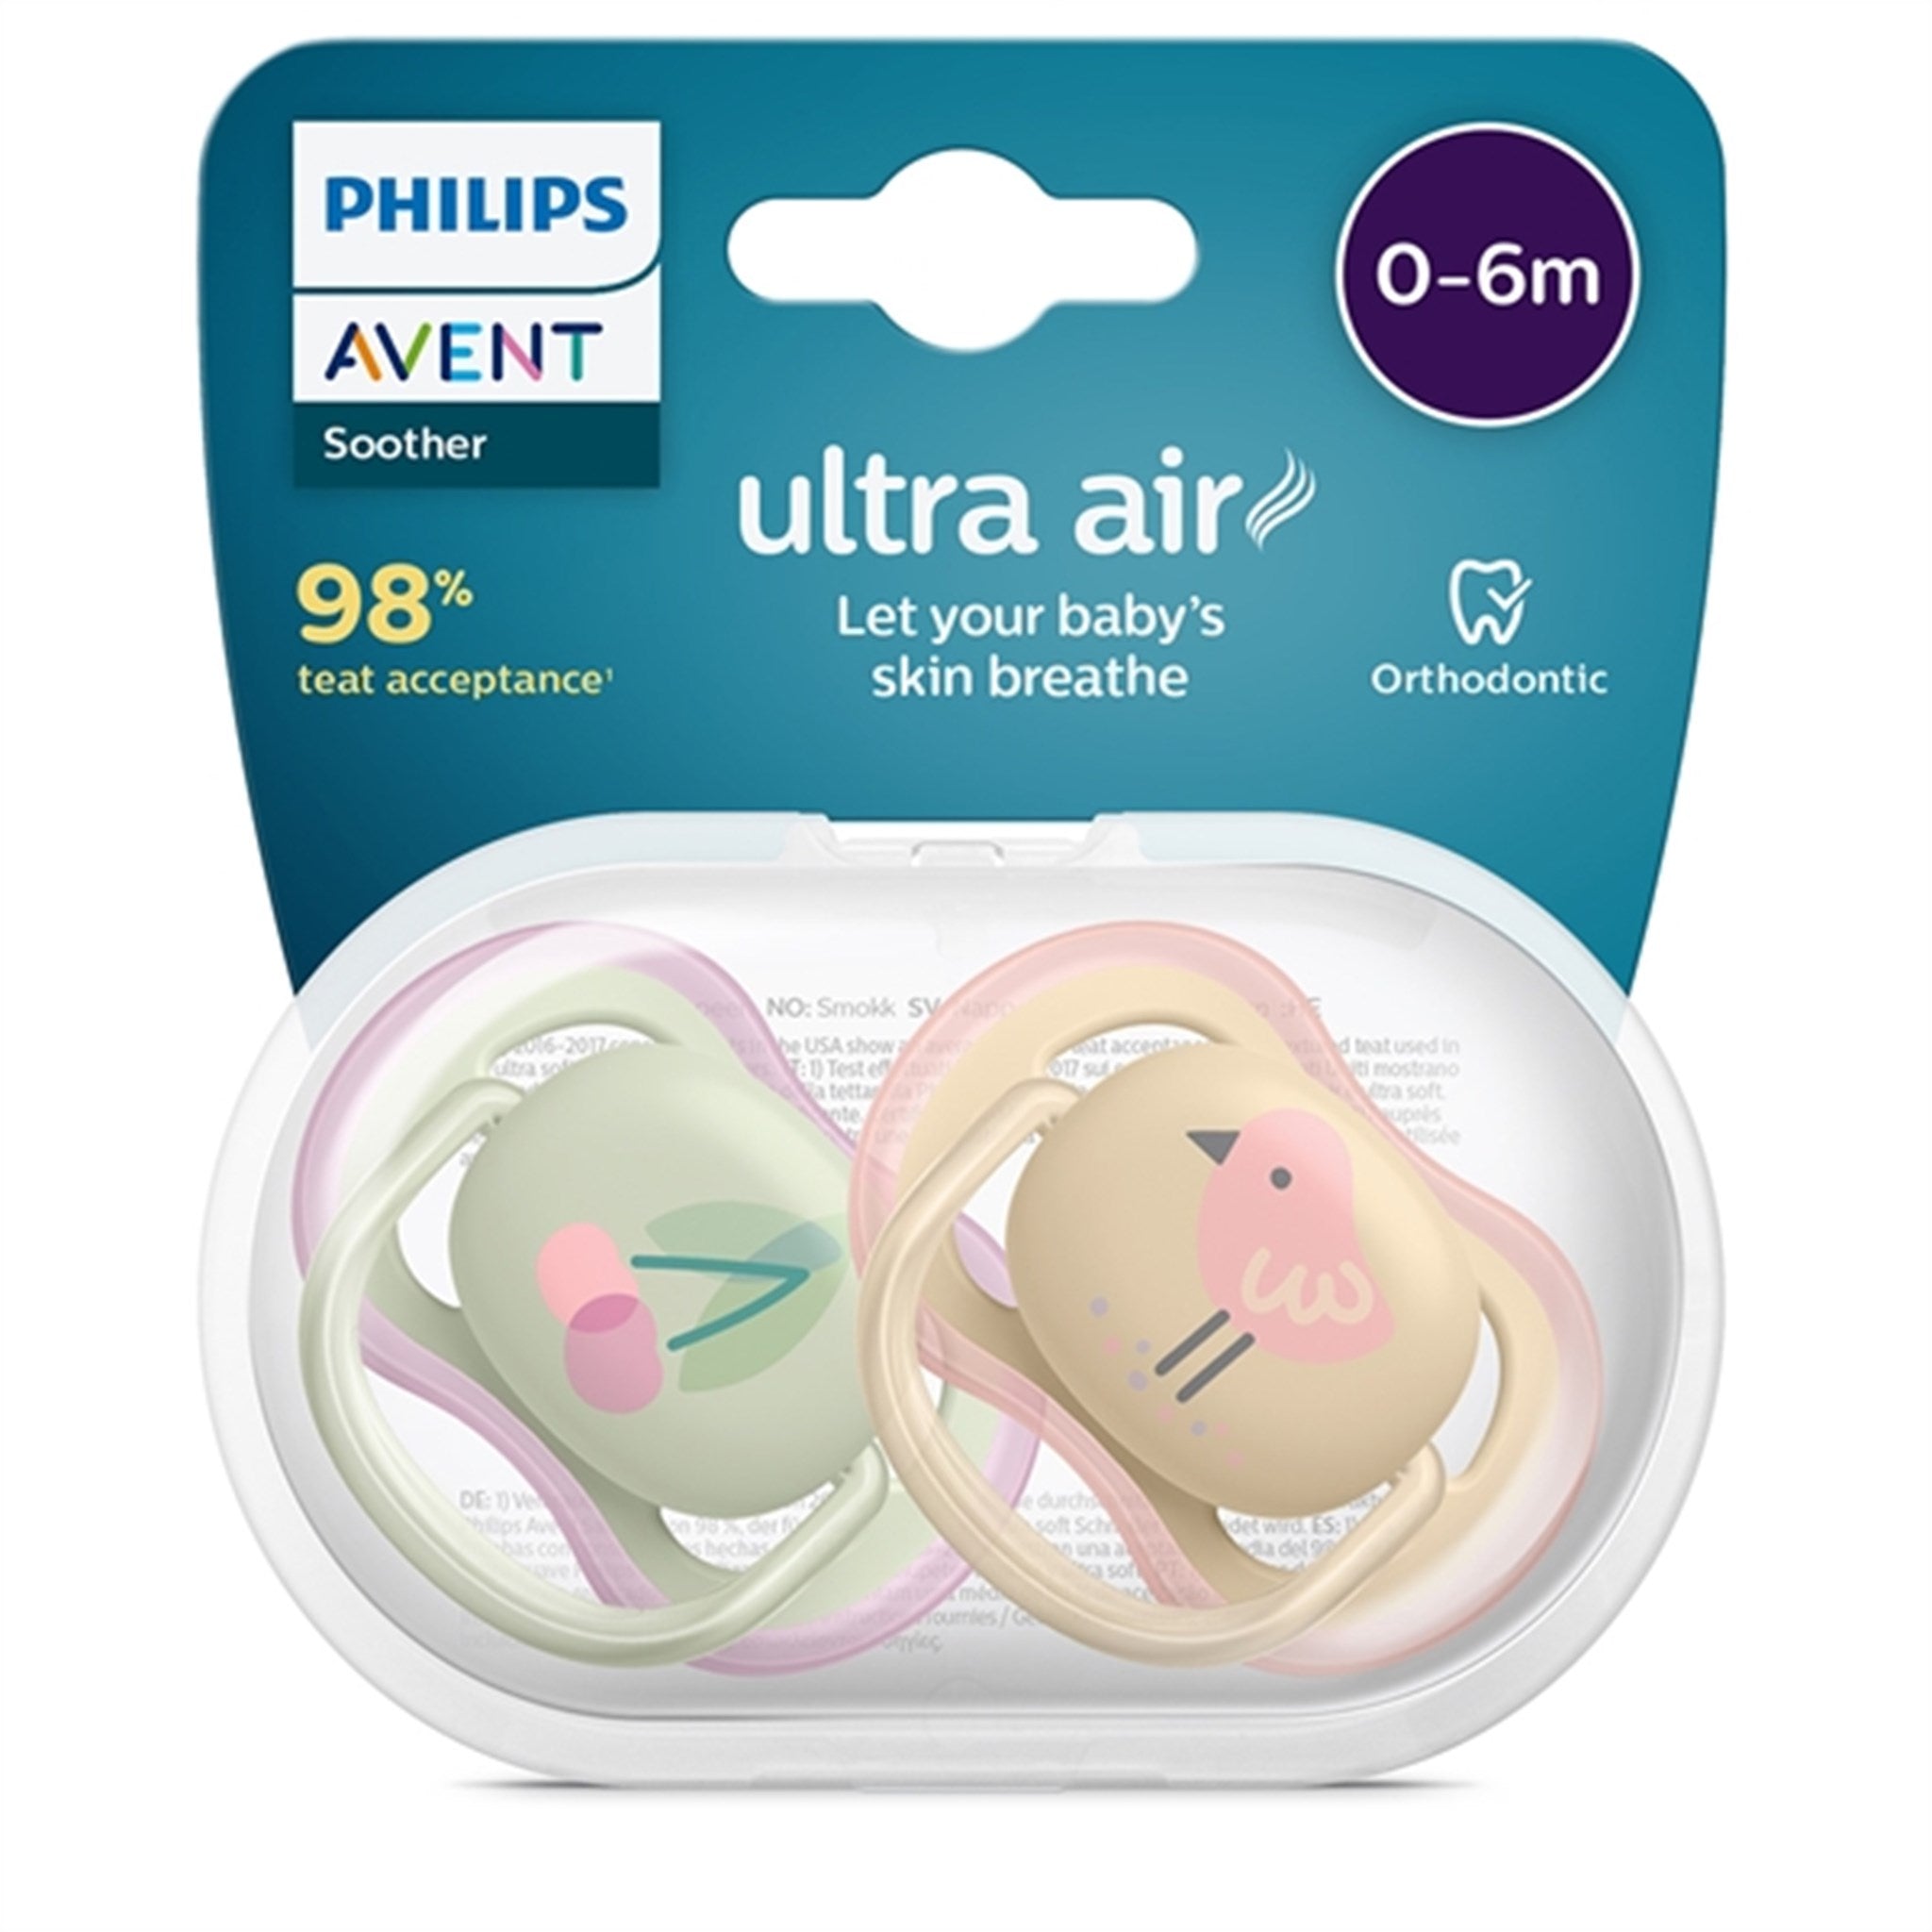 Philips Avent Ultra Air Pacifier 0-6 months Cherry/Bird 2-pack 2